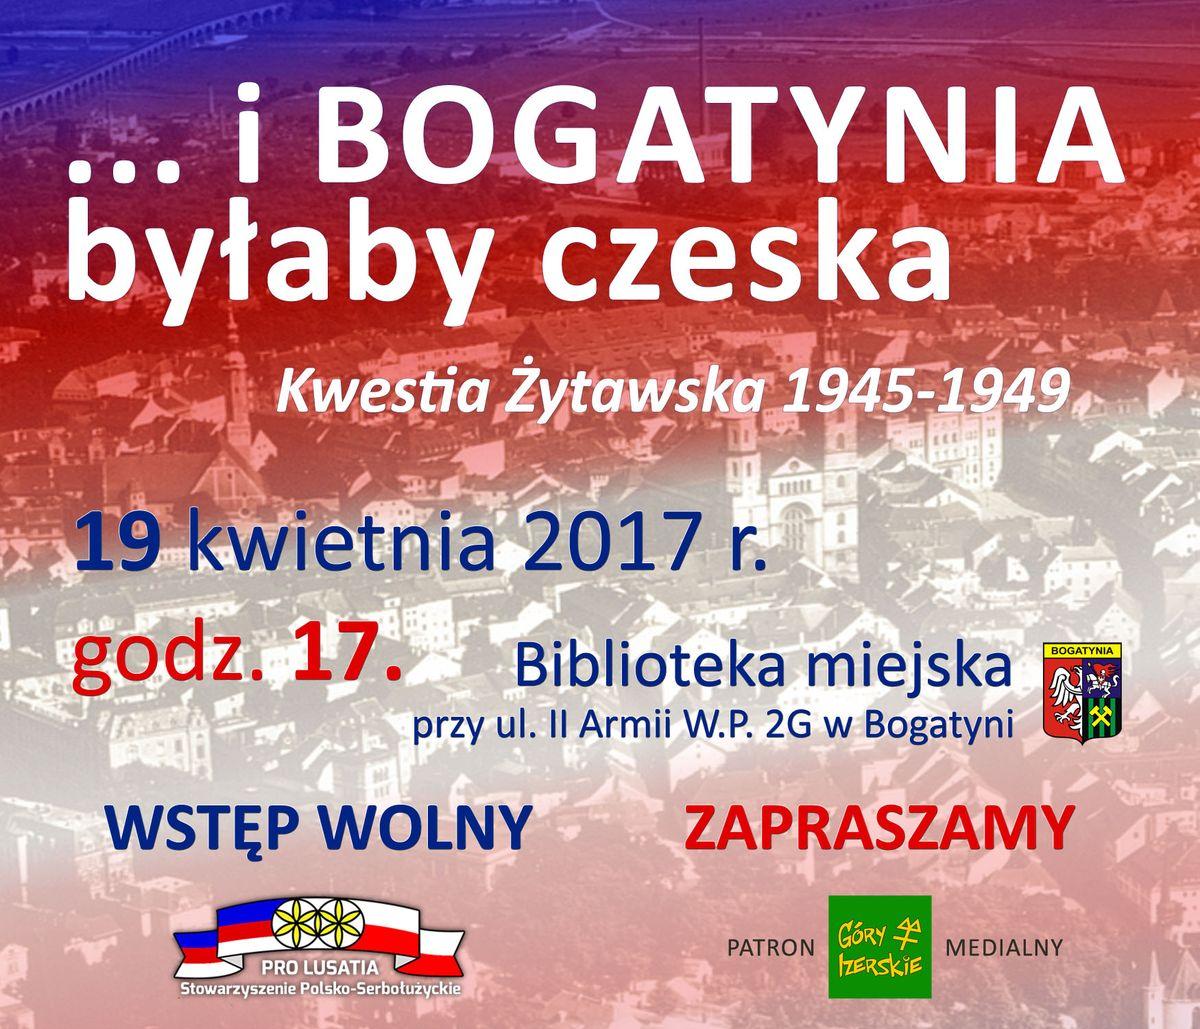 Spotkanie z prof. Piotrem Pałysem, autorem KWESTII ŻYTAWSKIEJ, w Bogatyni 19 kwietnia 2017 r.